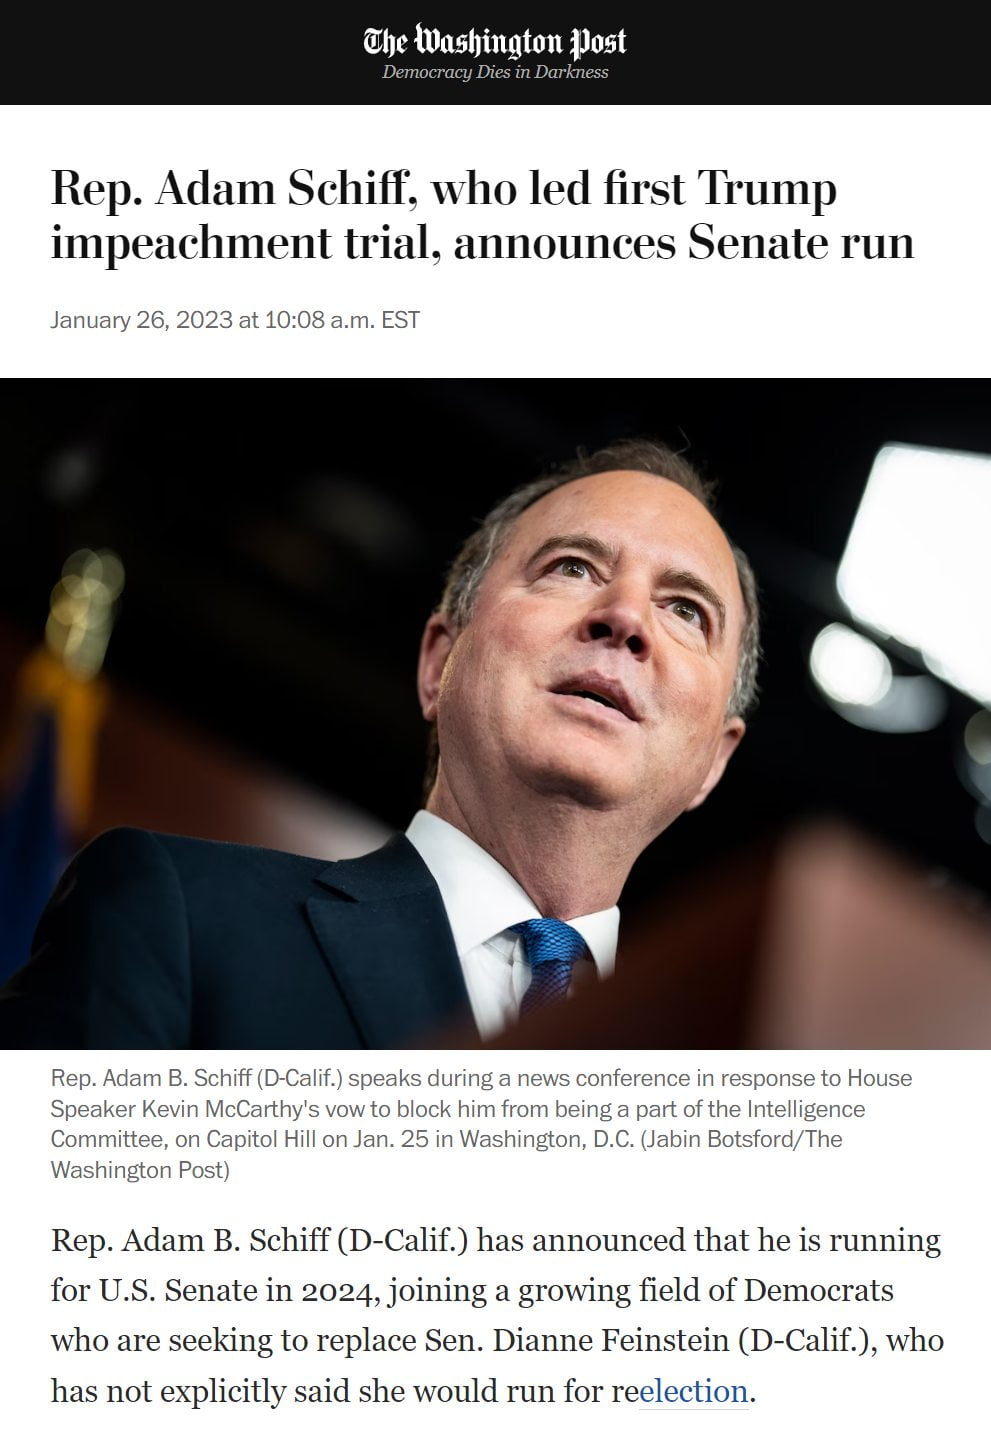 Adam Schiff of Russia collusion fame announces Senate run...